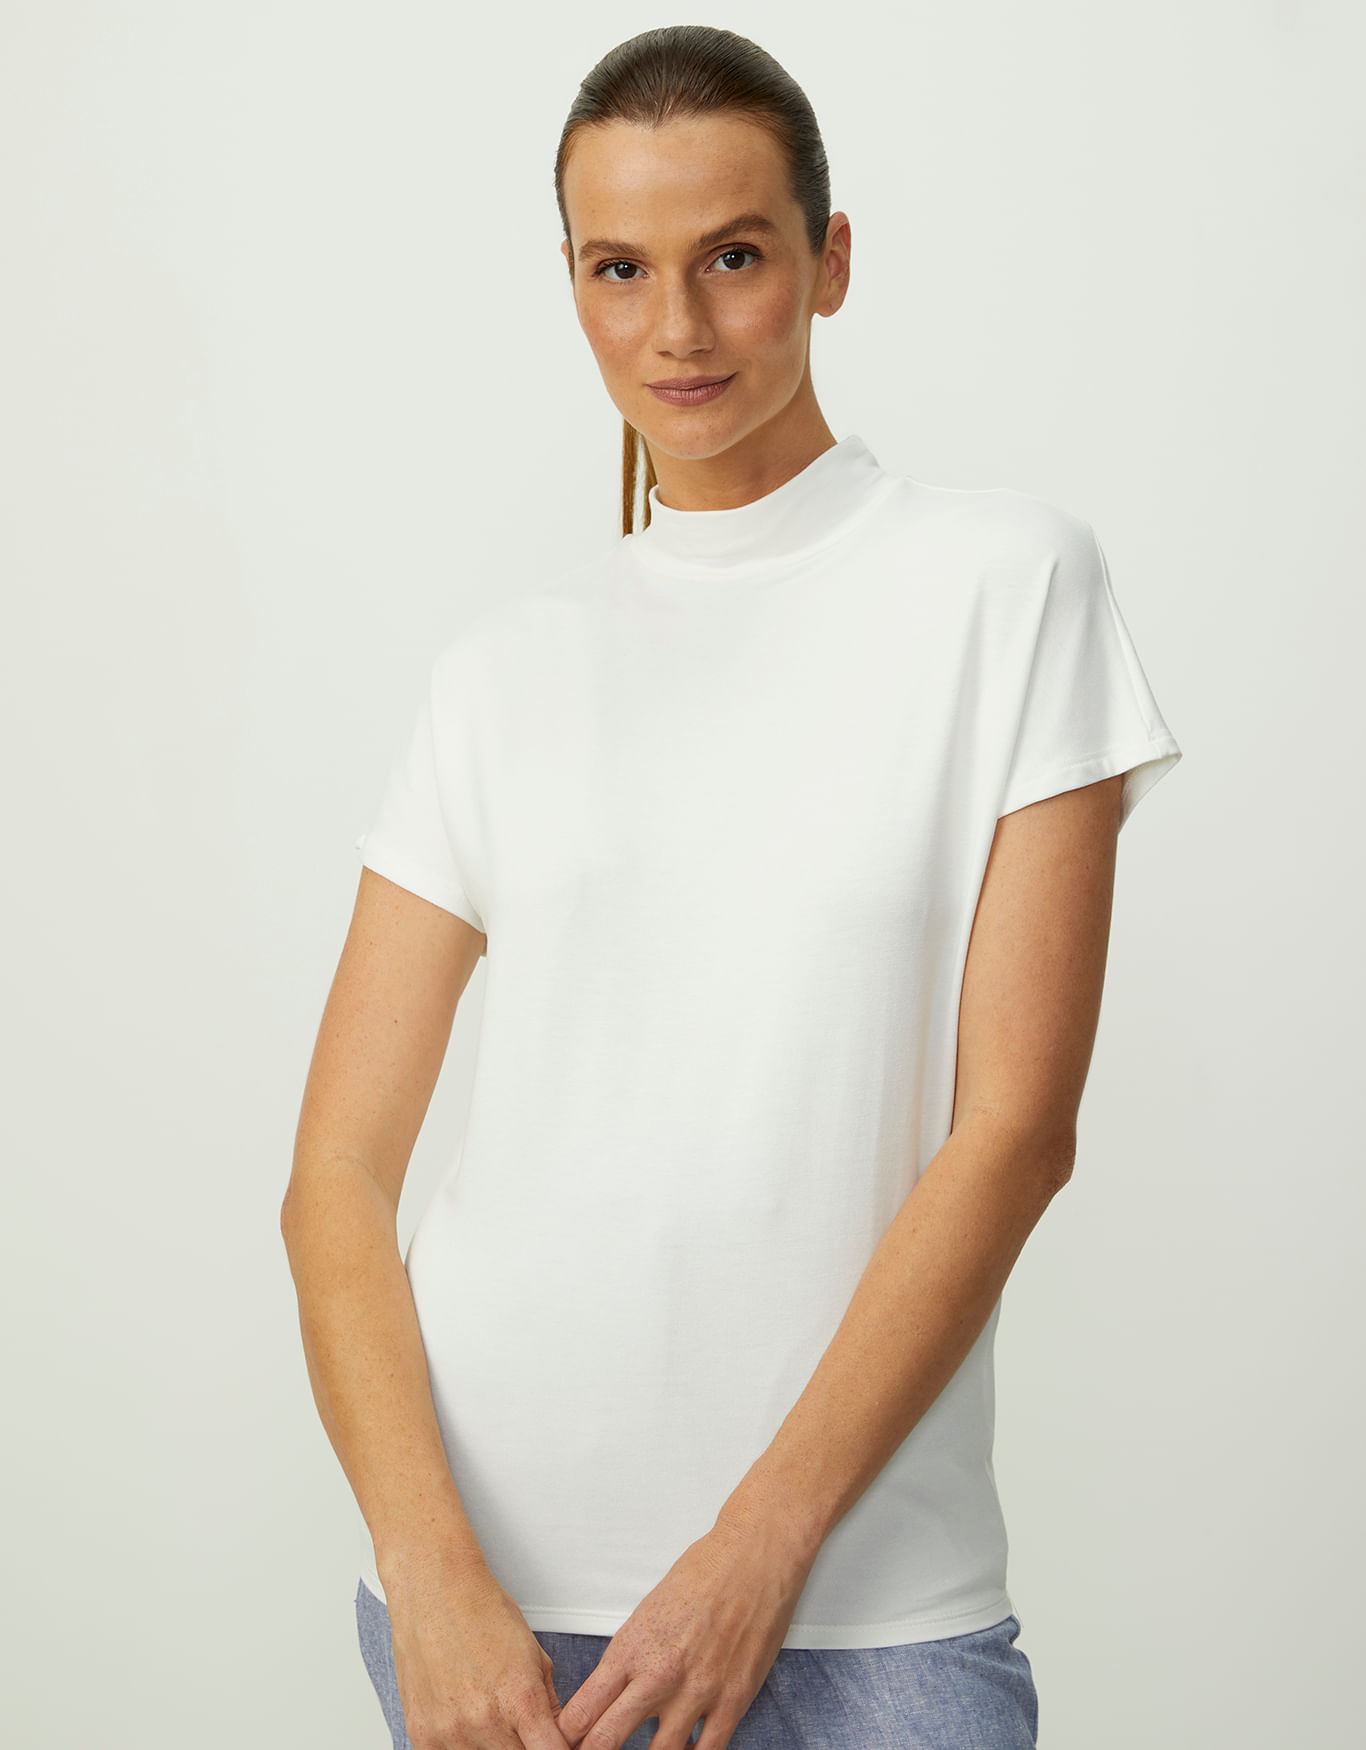 Blusa estilo camisa com gola - R$ 55.00, cor Branco (de malha